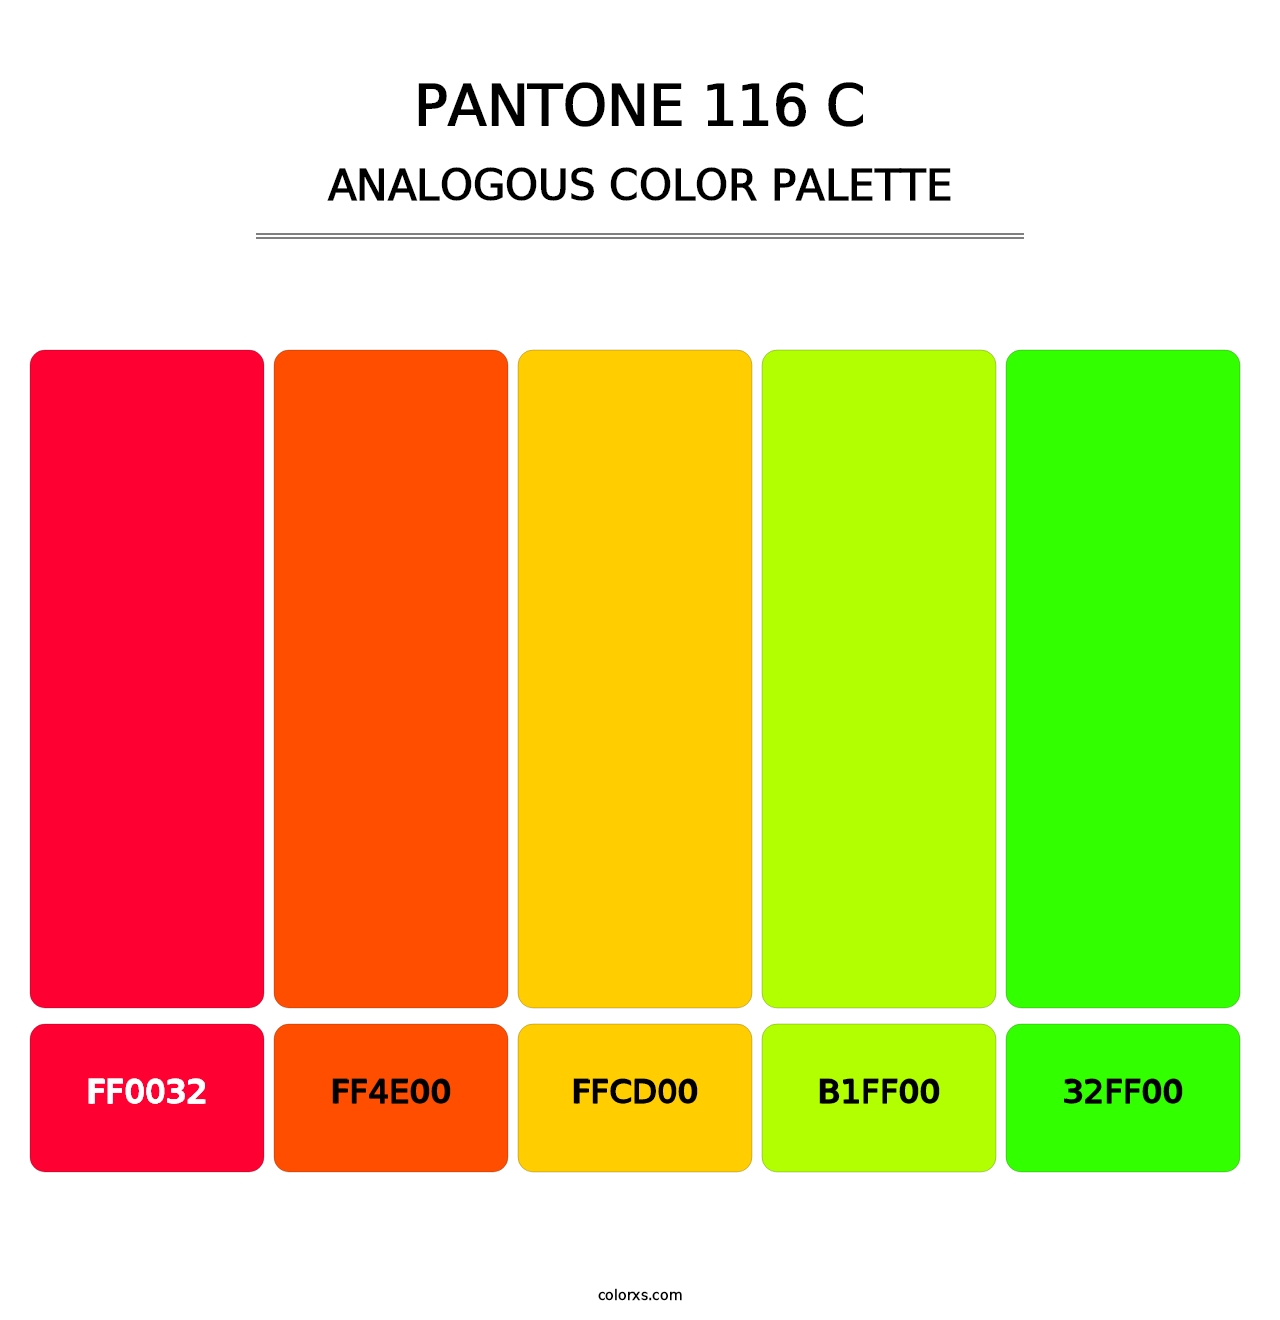 PANTONE 116 C - Analogous Color Palette